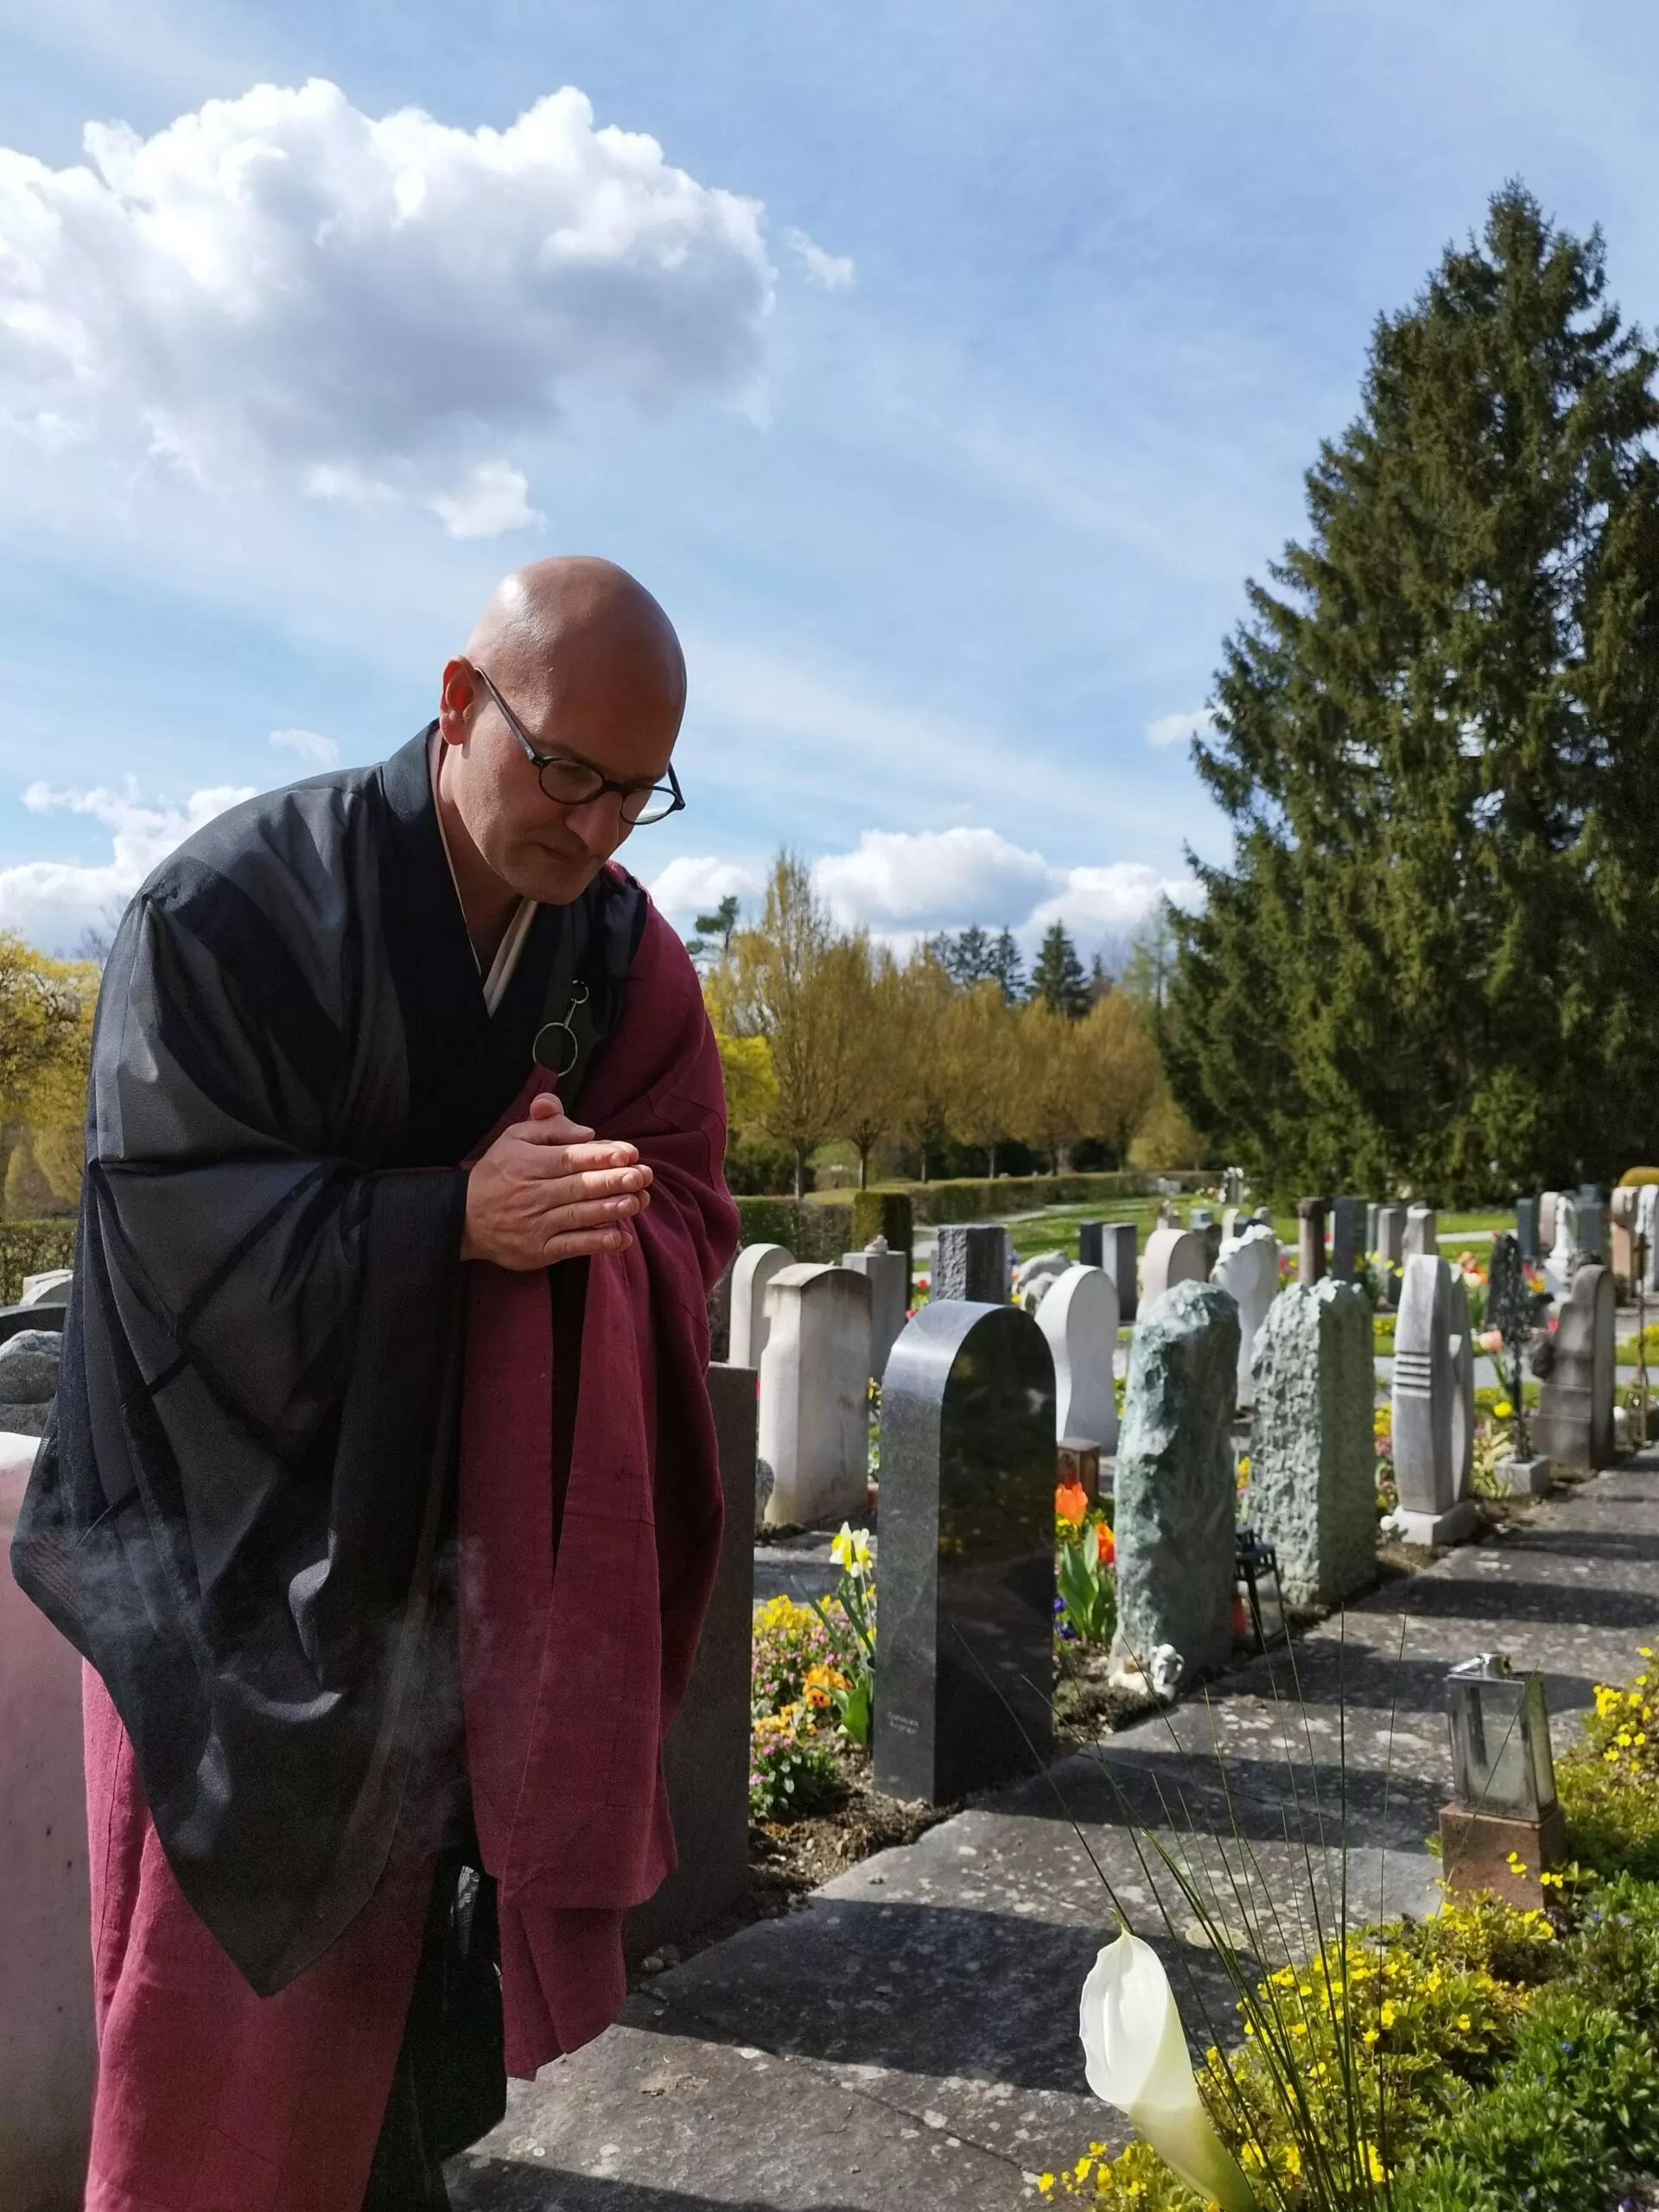 Abdankungsredner - Trauerredner - Zen Meister Vater Reding